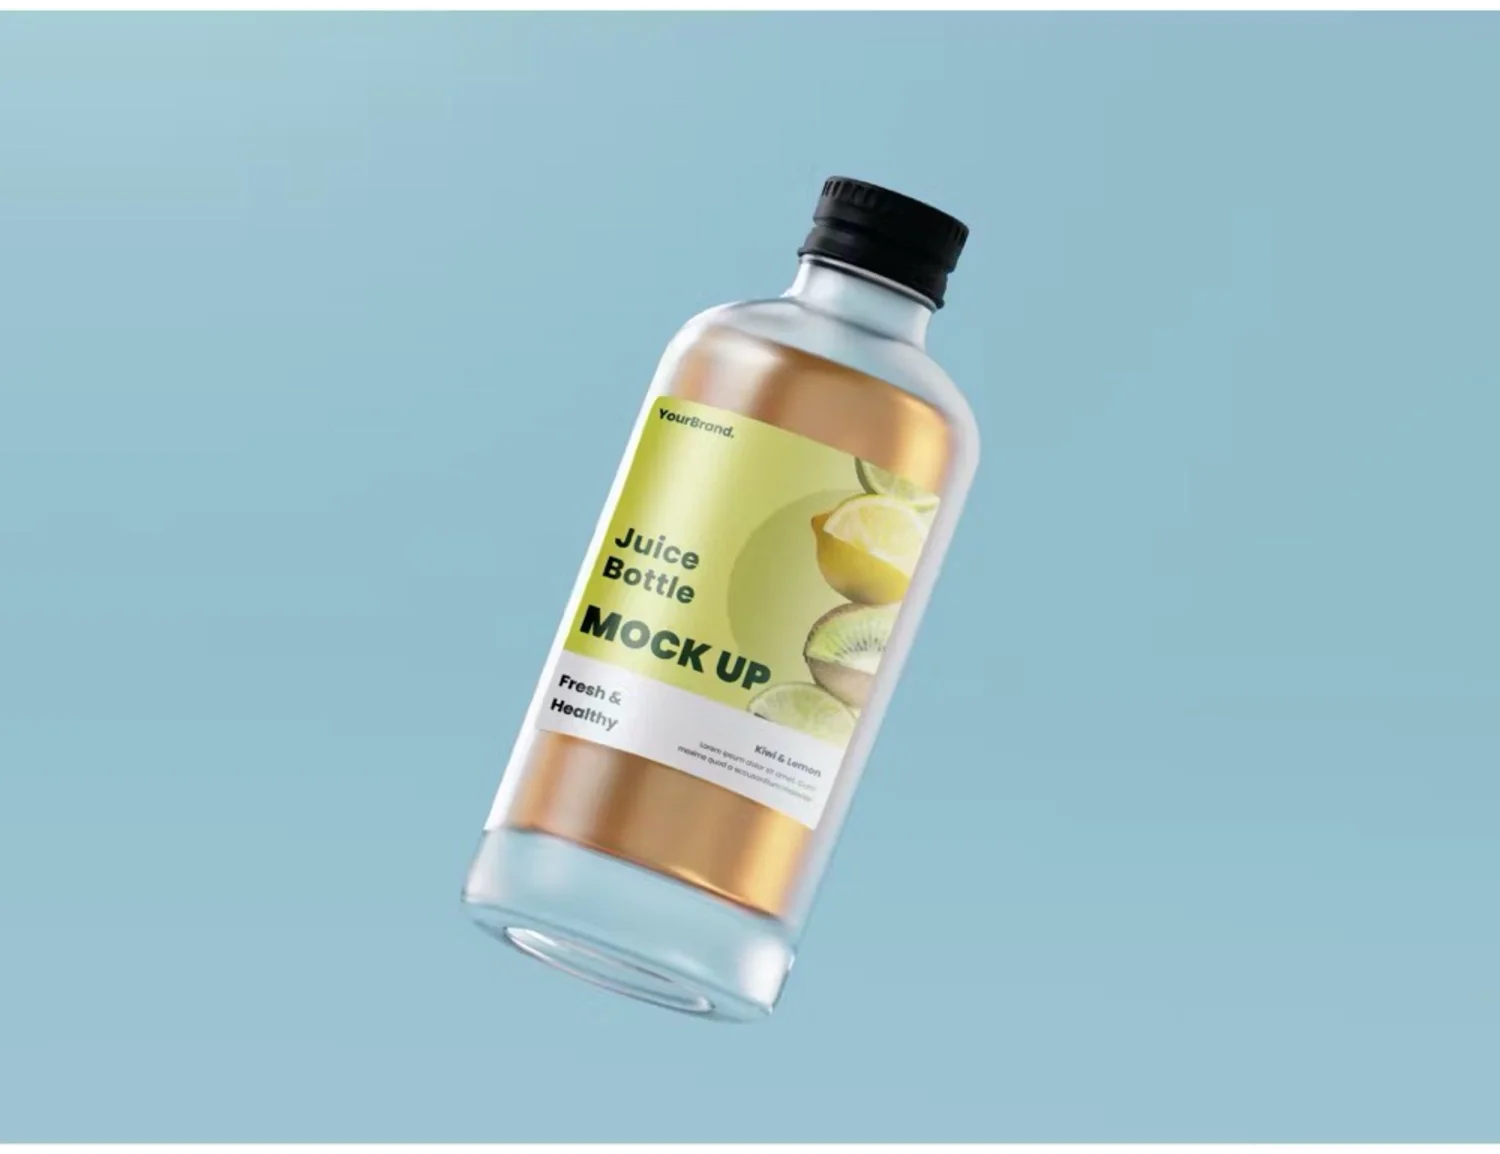 5112 玻璃磨砂质感果汁瓶包装设计展示psd样机素材 Juice Bottle Mock-ups@GOOODME.COM